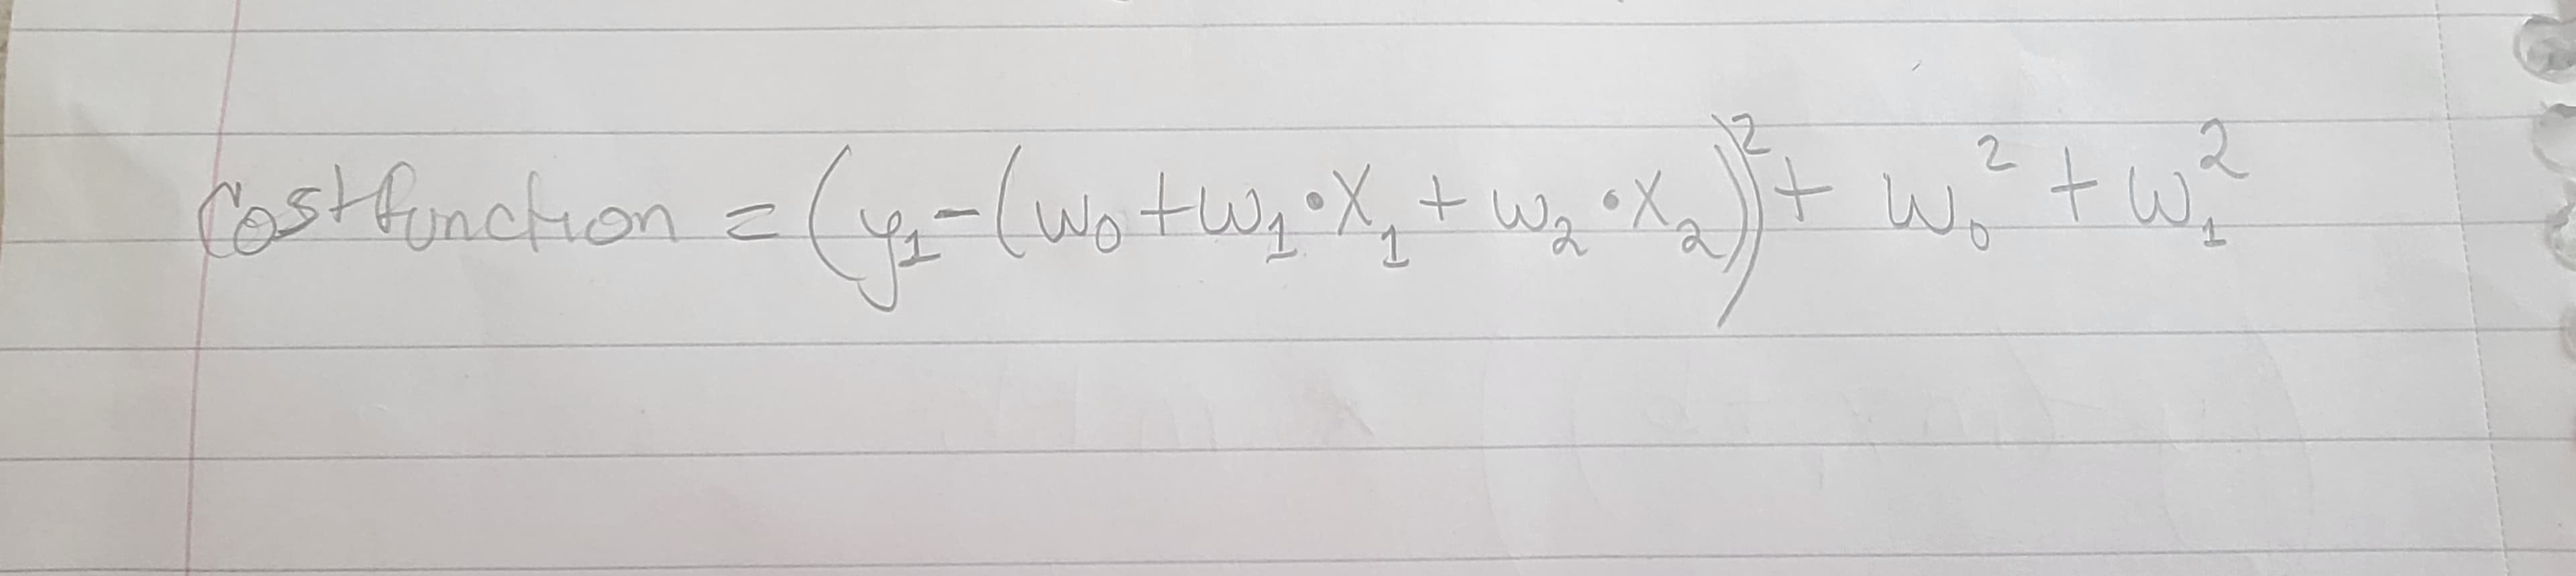 2
2
it w₂₁² + w₂²
Wo
tw
Cost function =
= (y₁ = (wat W₂ •X₂ + W₂ •X₂₁)] +